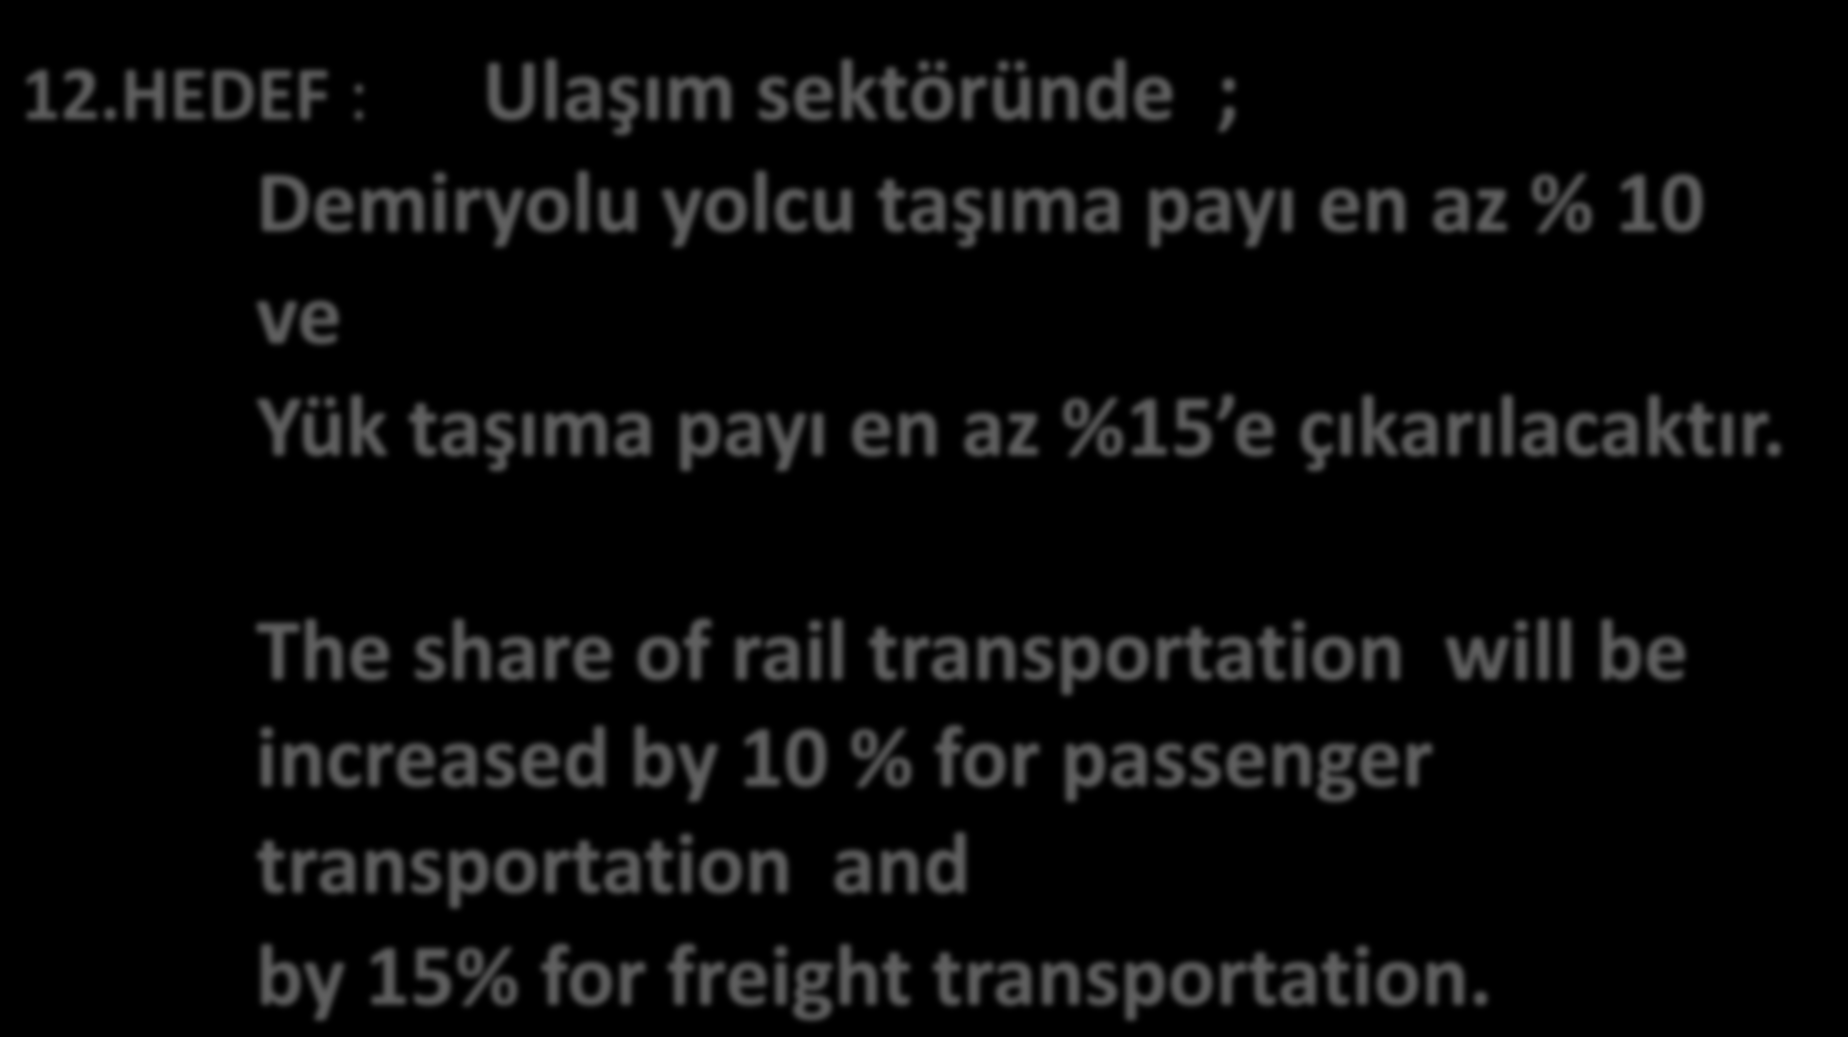 HEDEF 2023 12.HEDEF : Ulaşım sektöründe ; Demiryolu yolcu taşıma payı en az % 10 ve Yük taşıma payı en az %15 e çıkarılacaktır.